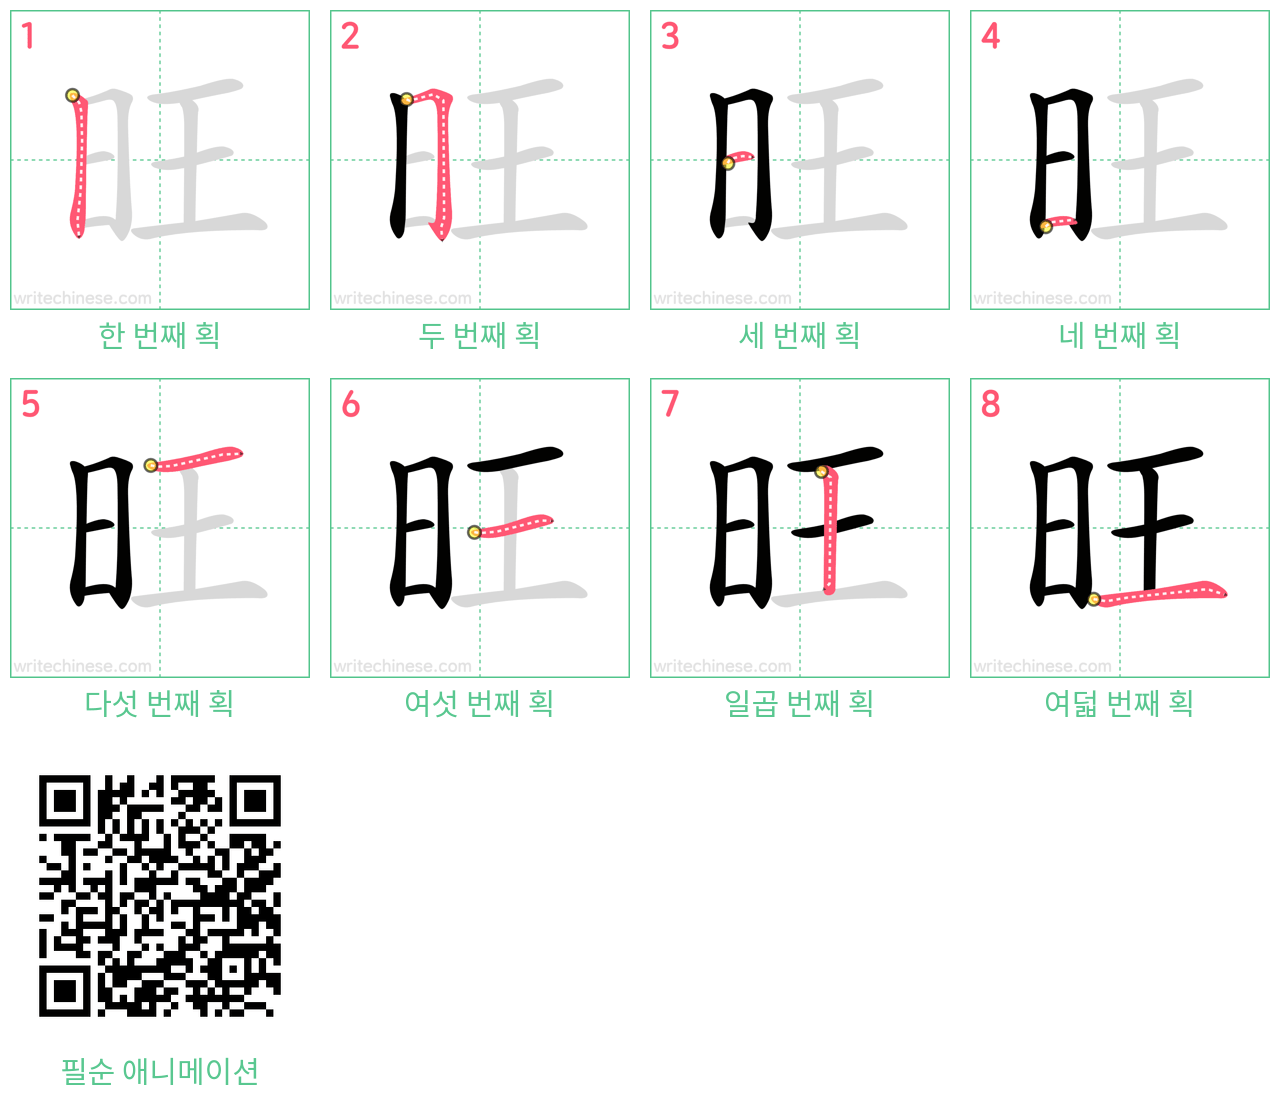 旺 step-by-step stroke order diagrams